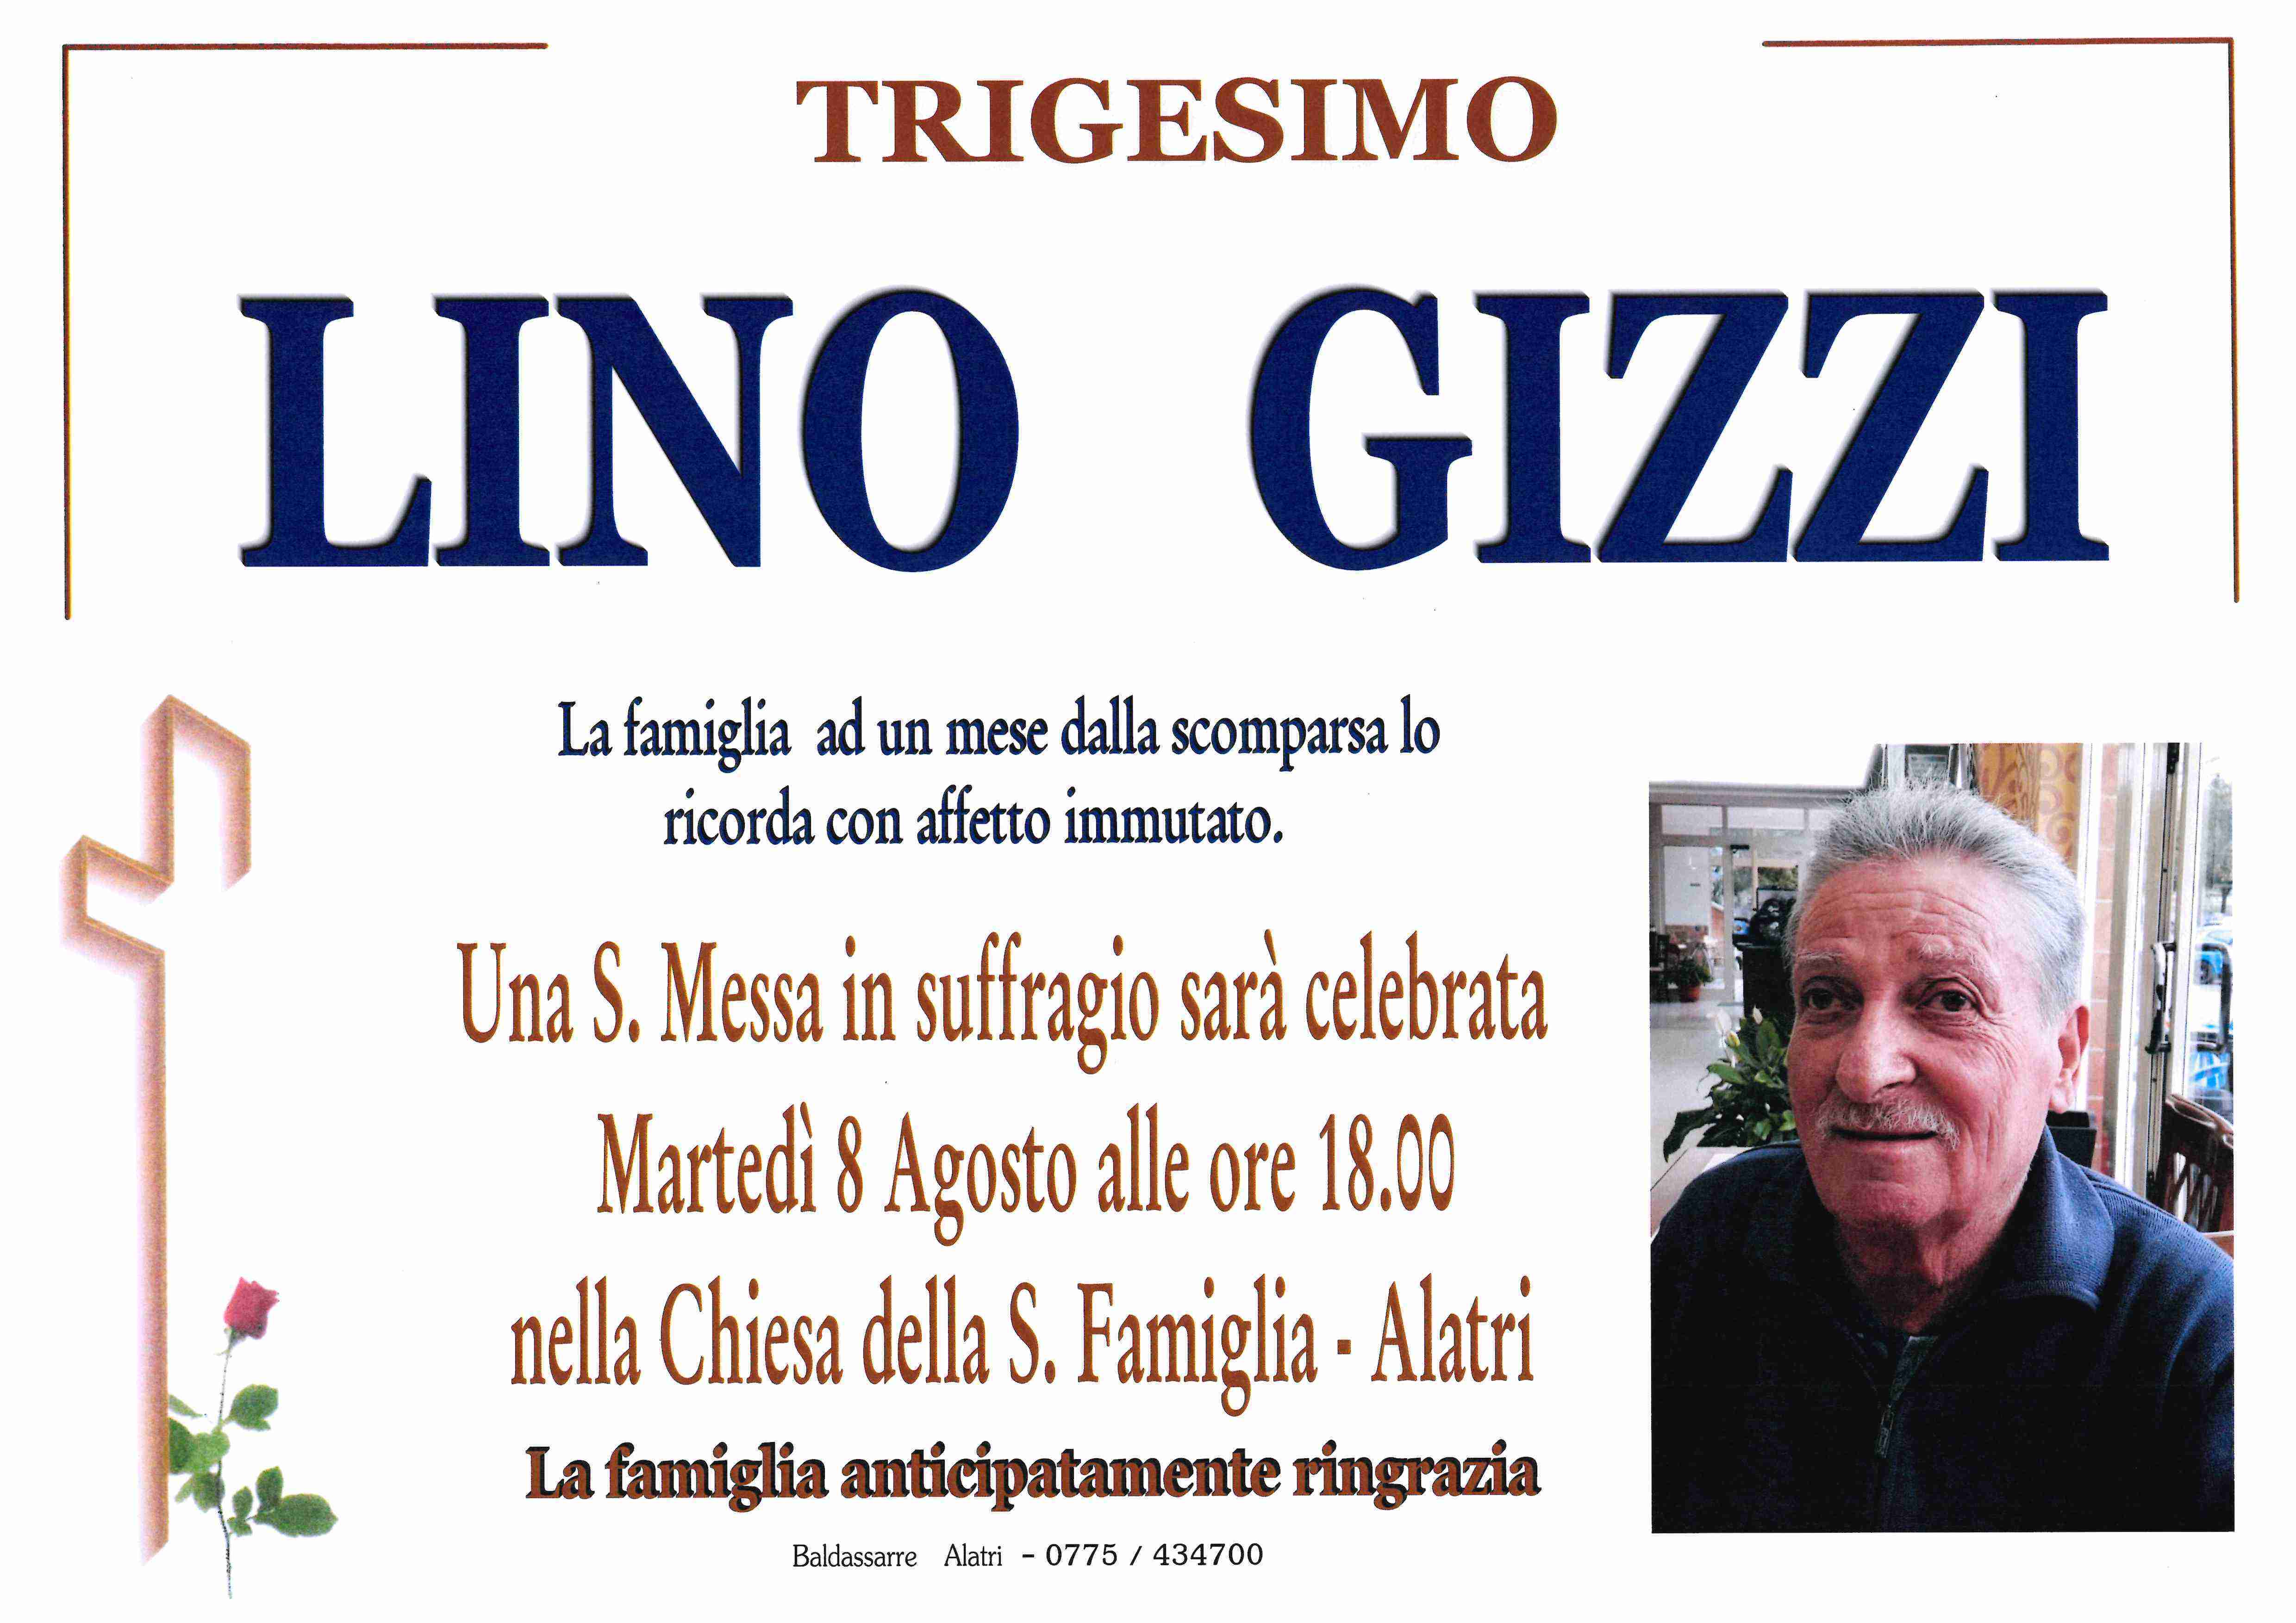 Lino Gizzi